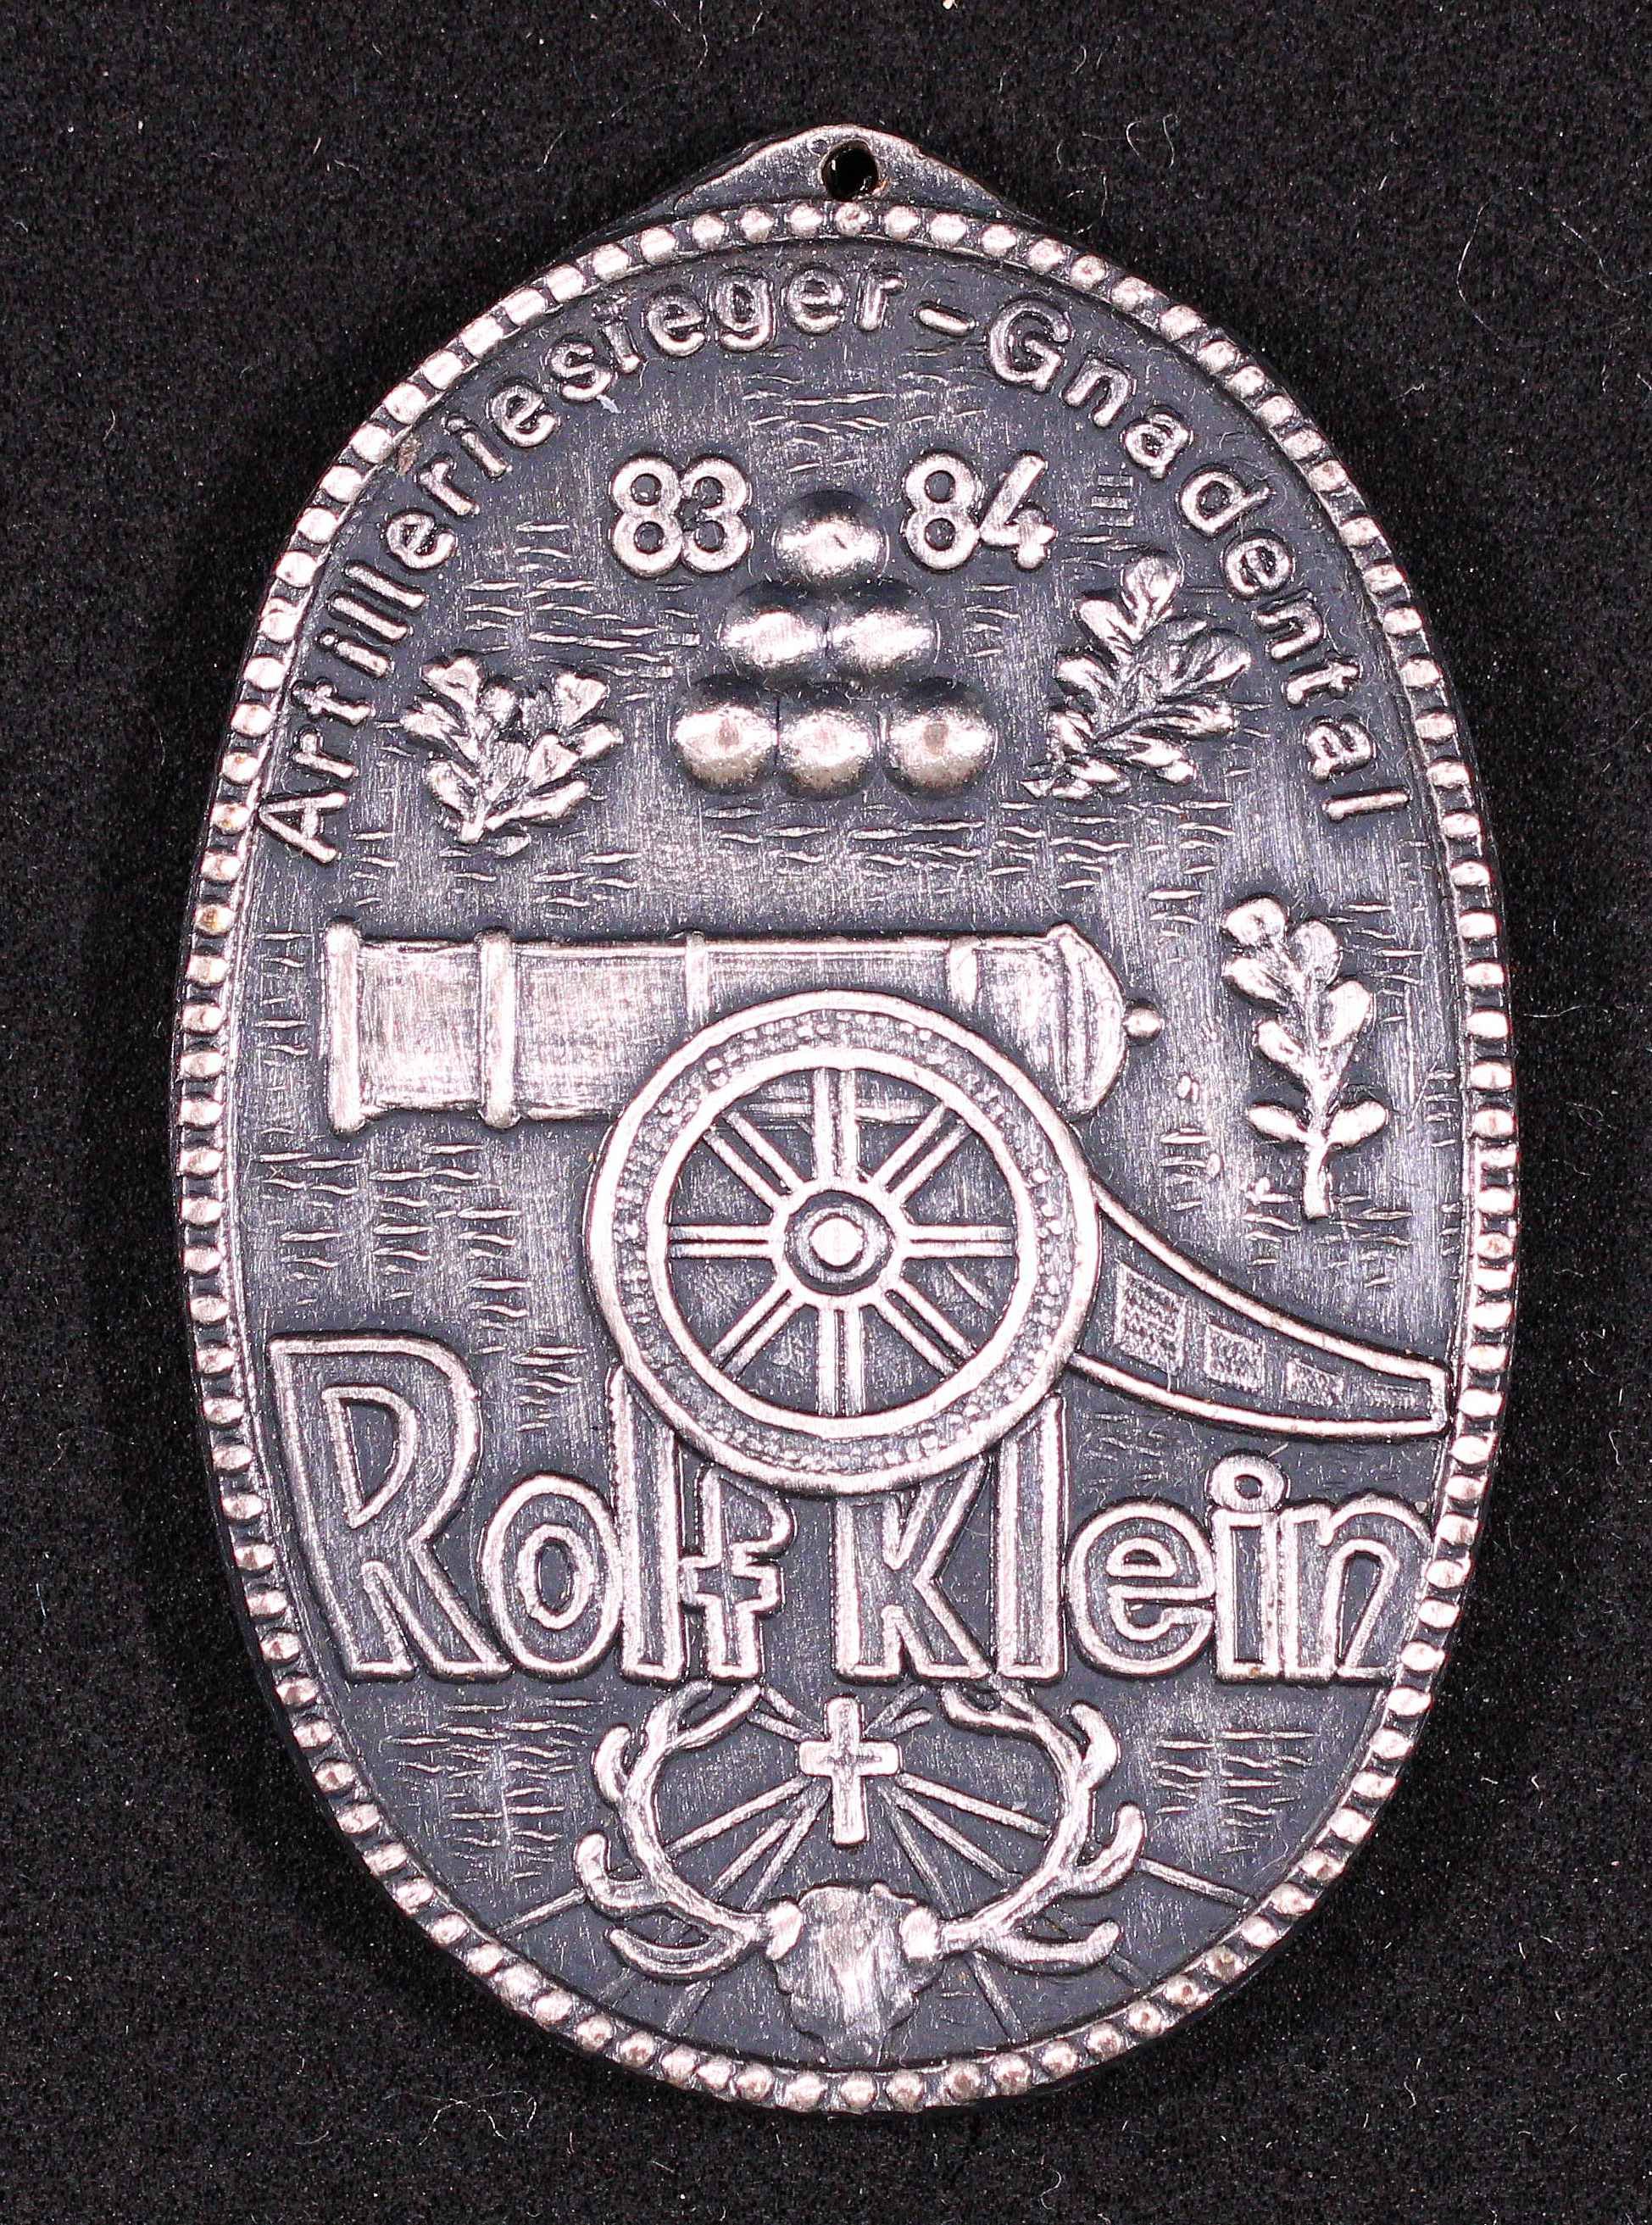 Orden Artilleriesieger Neuss 1983/84 Rolf Klein VS (Rheinisches Schützenmuseum Neuss CC BY-NC-SA)